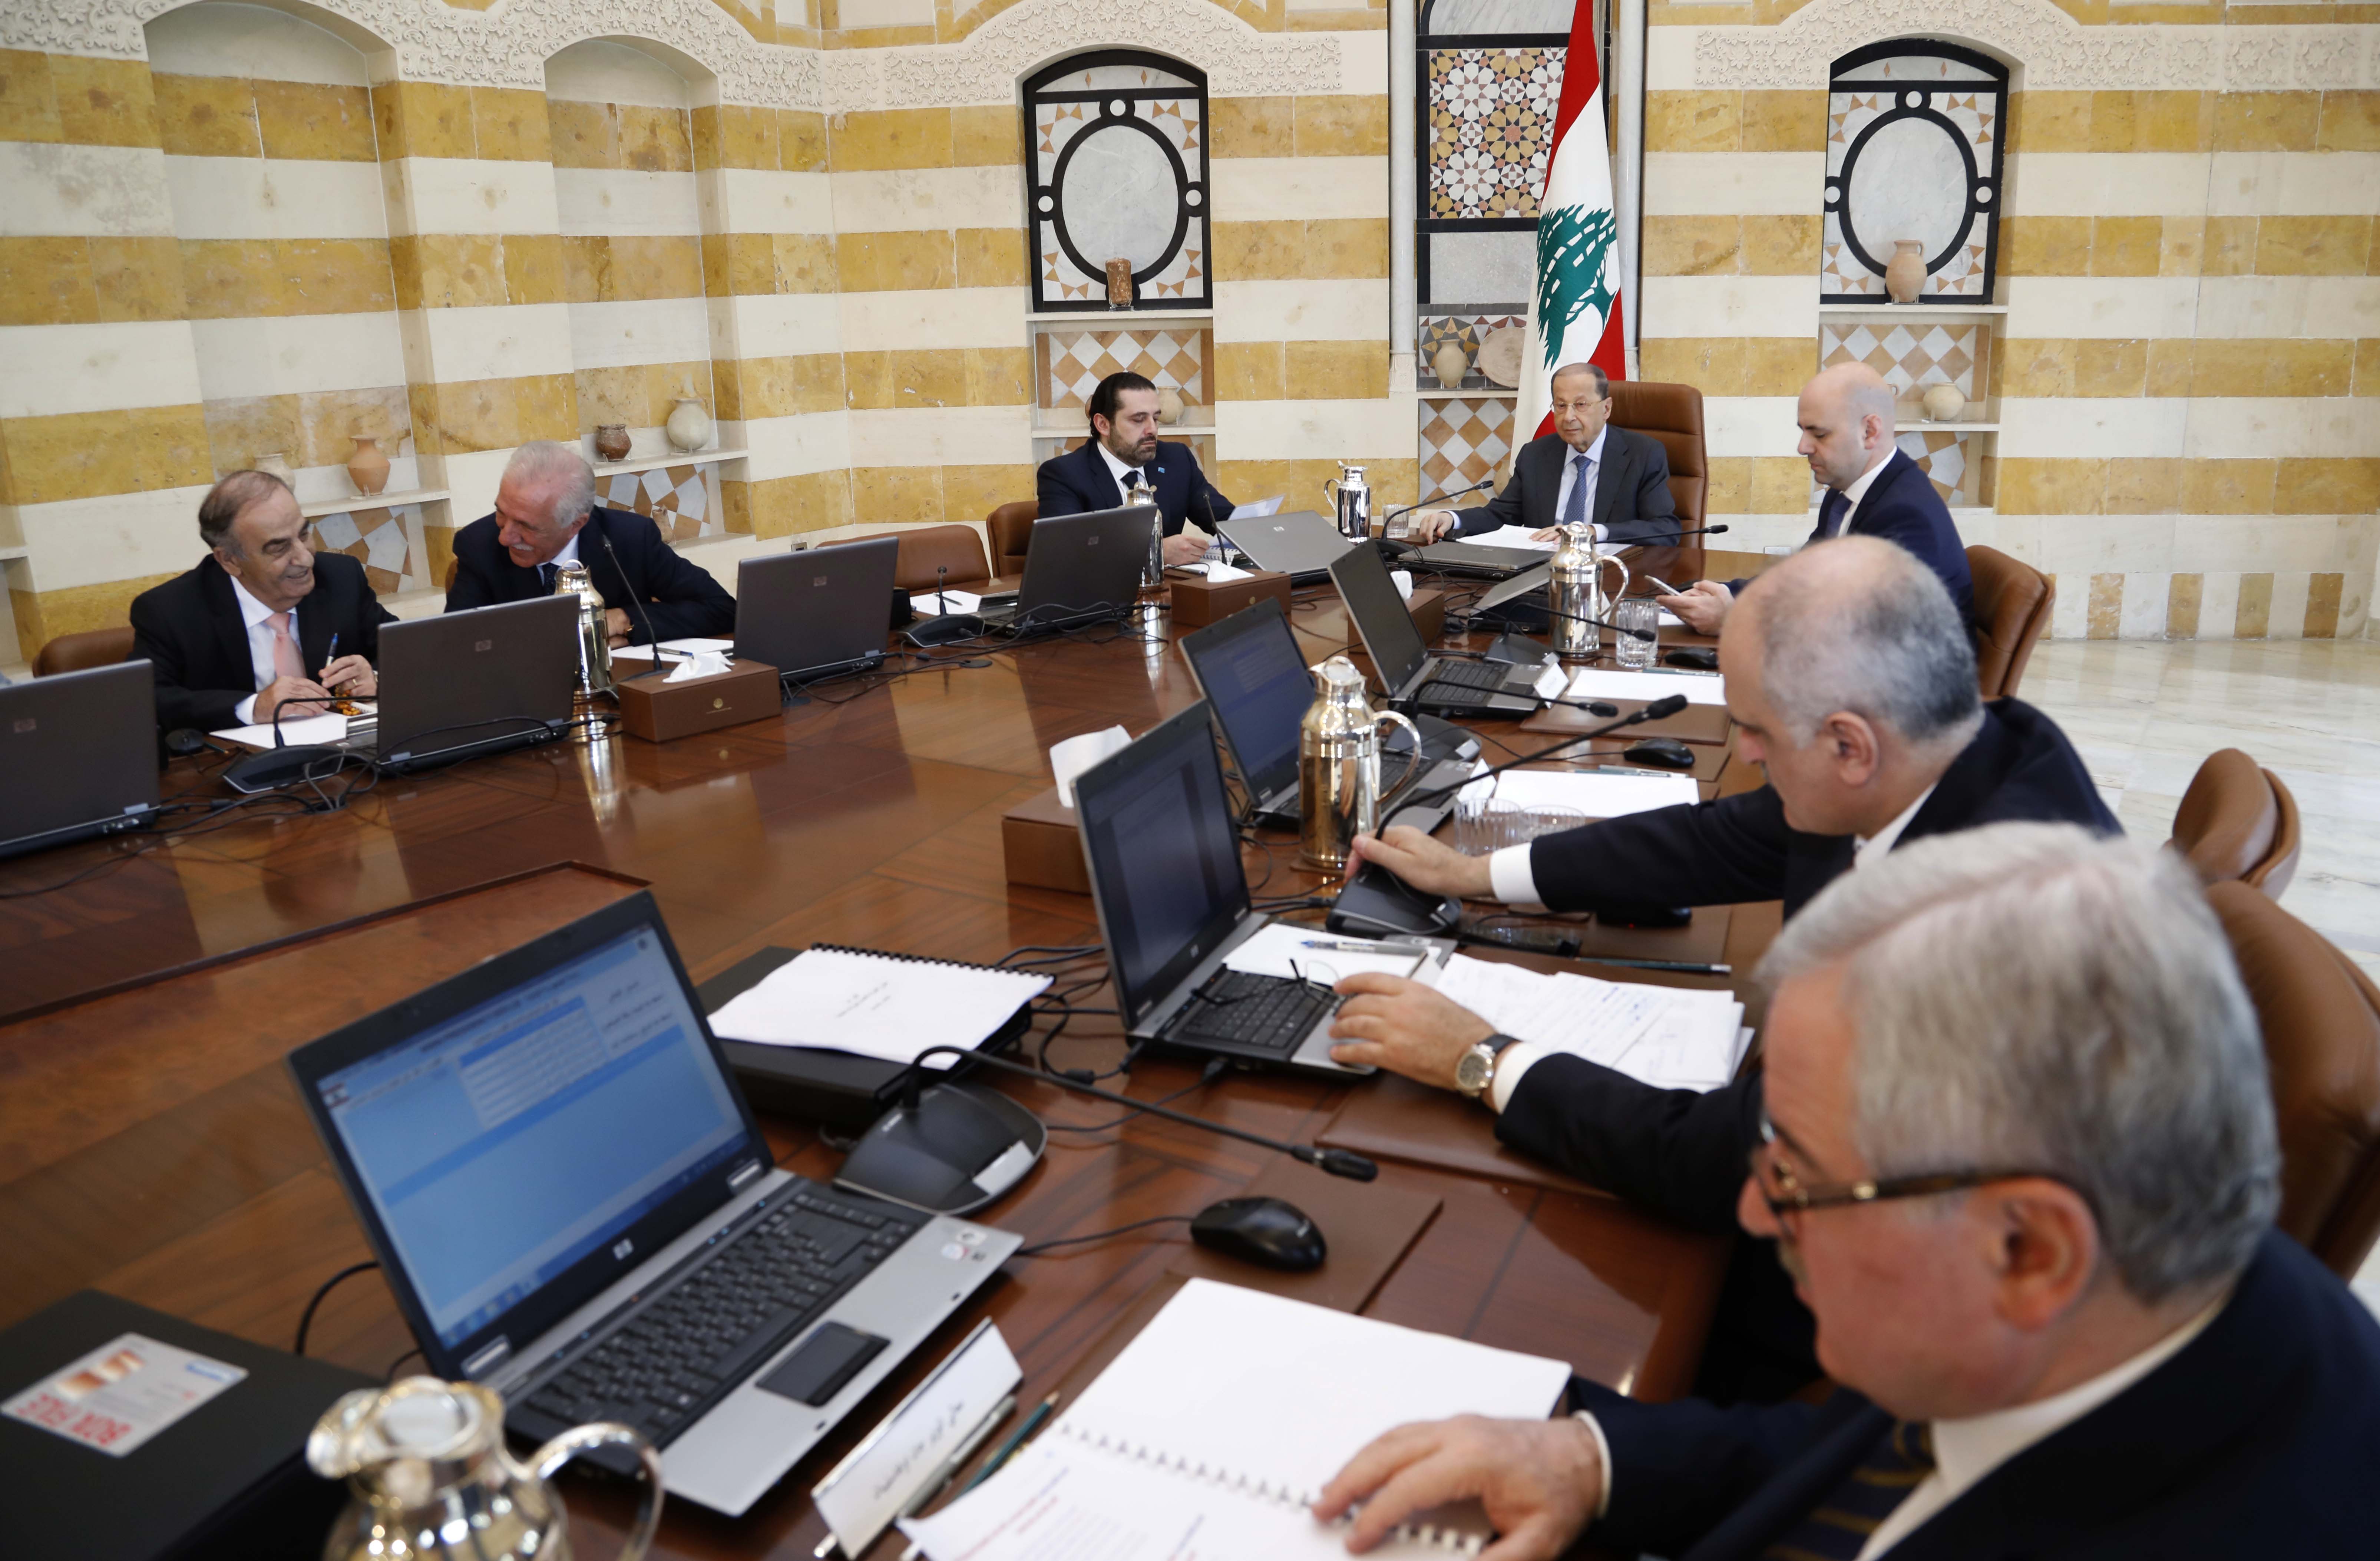 جانب من جلسة الحكومة اللبنانية المخصصة لعرض مشروع موازنة 2018